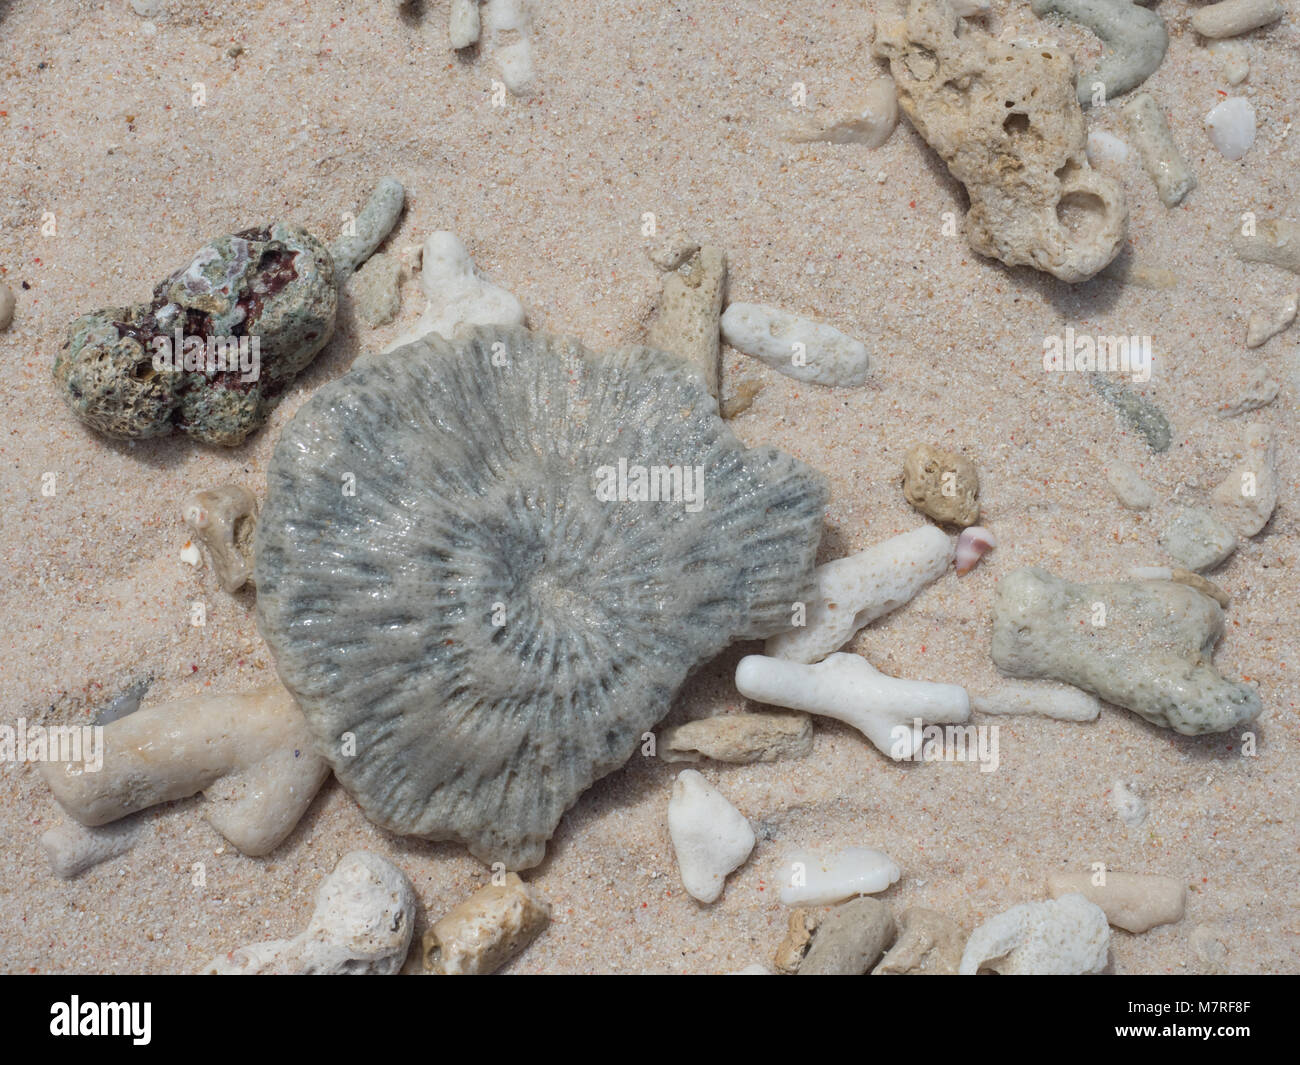 Hintergrund Textur. Grau Shell am Strand von Muscheln und Korallen, Indonesien, sieben Inseln, in der Nähe der Insel Seram, Molukken, Indonesien, pelau Sau Stockfoto